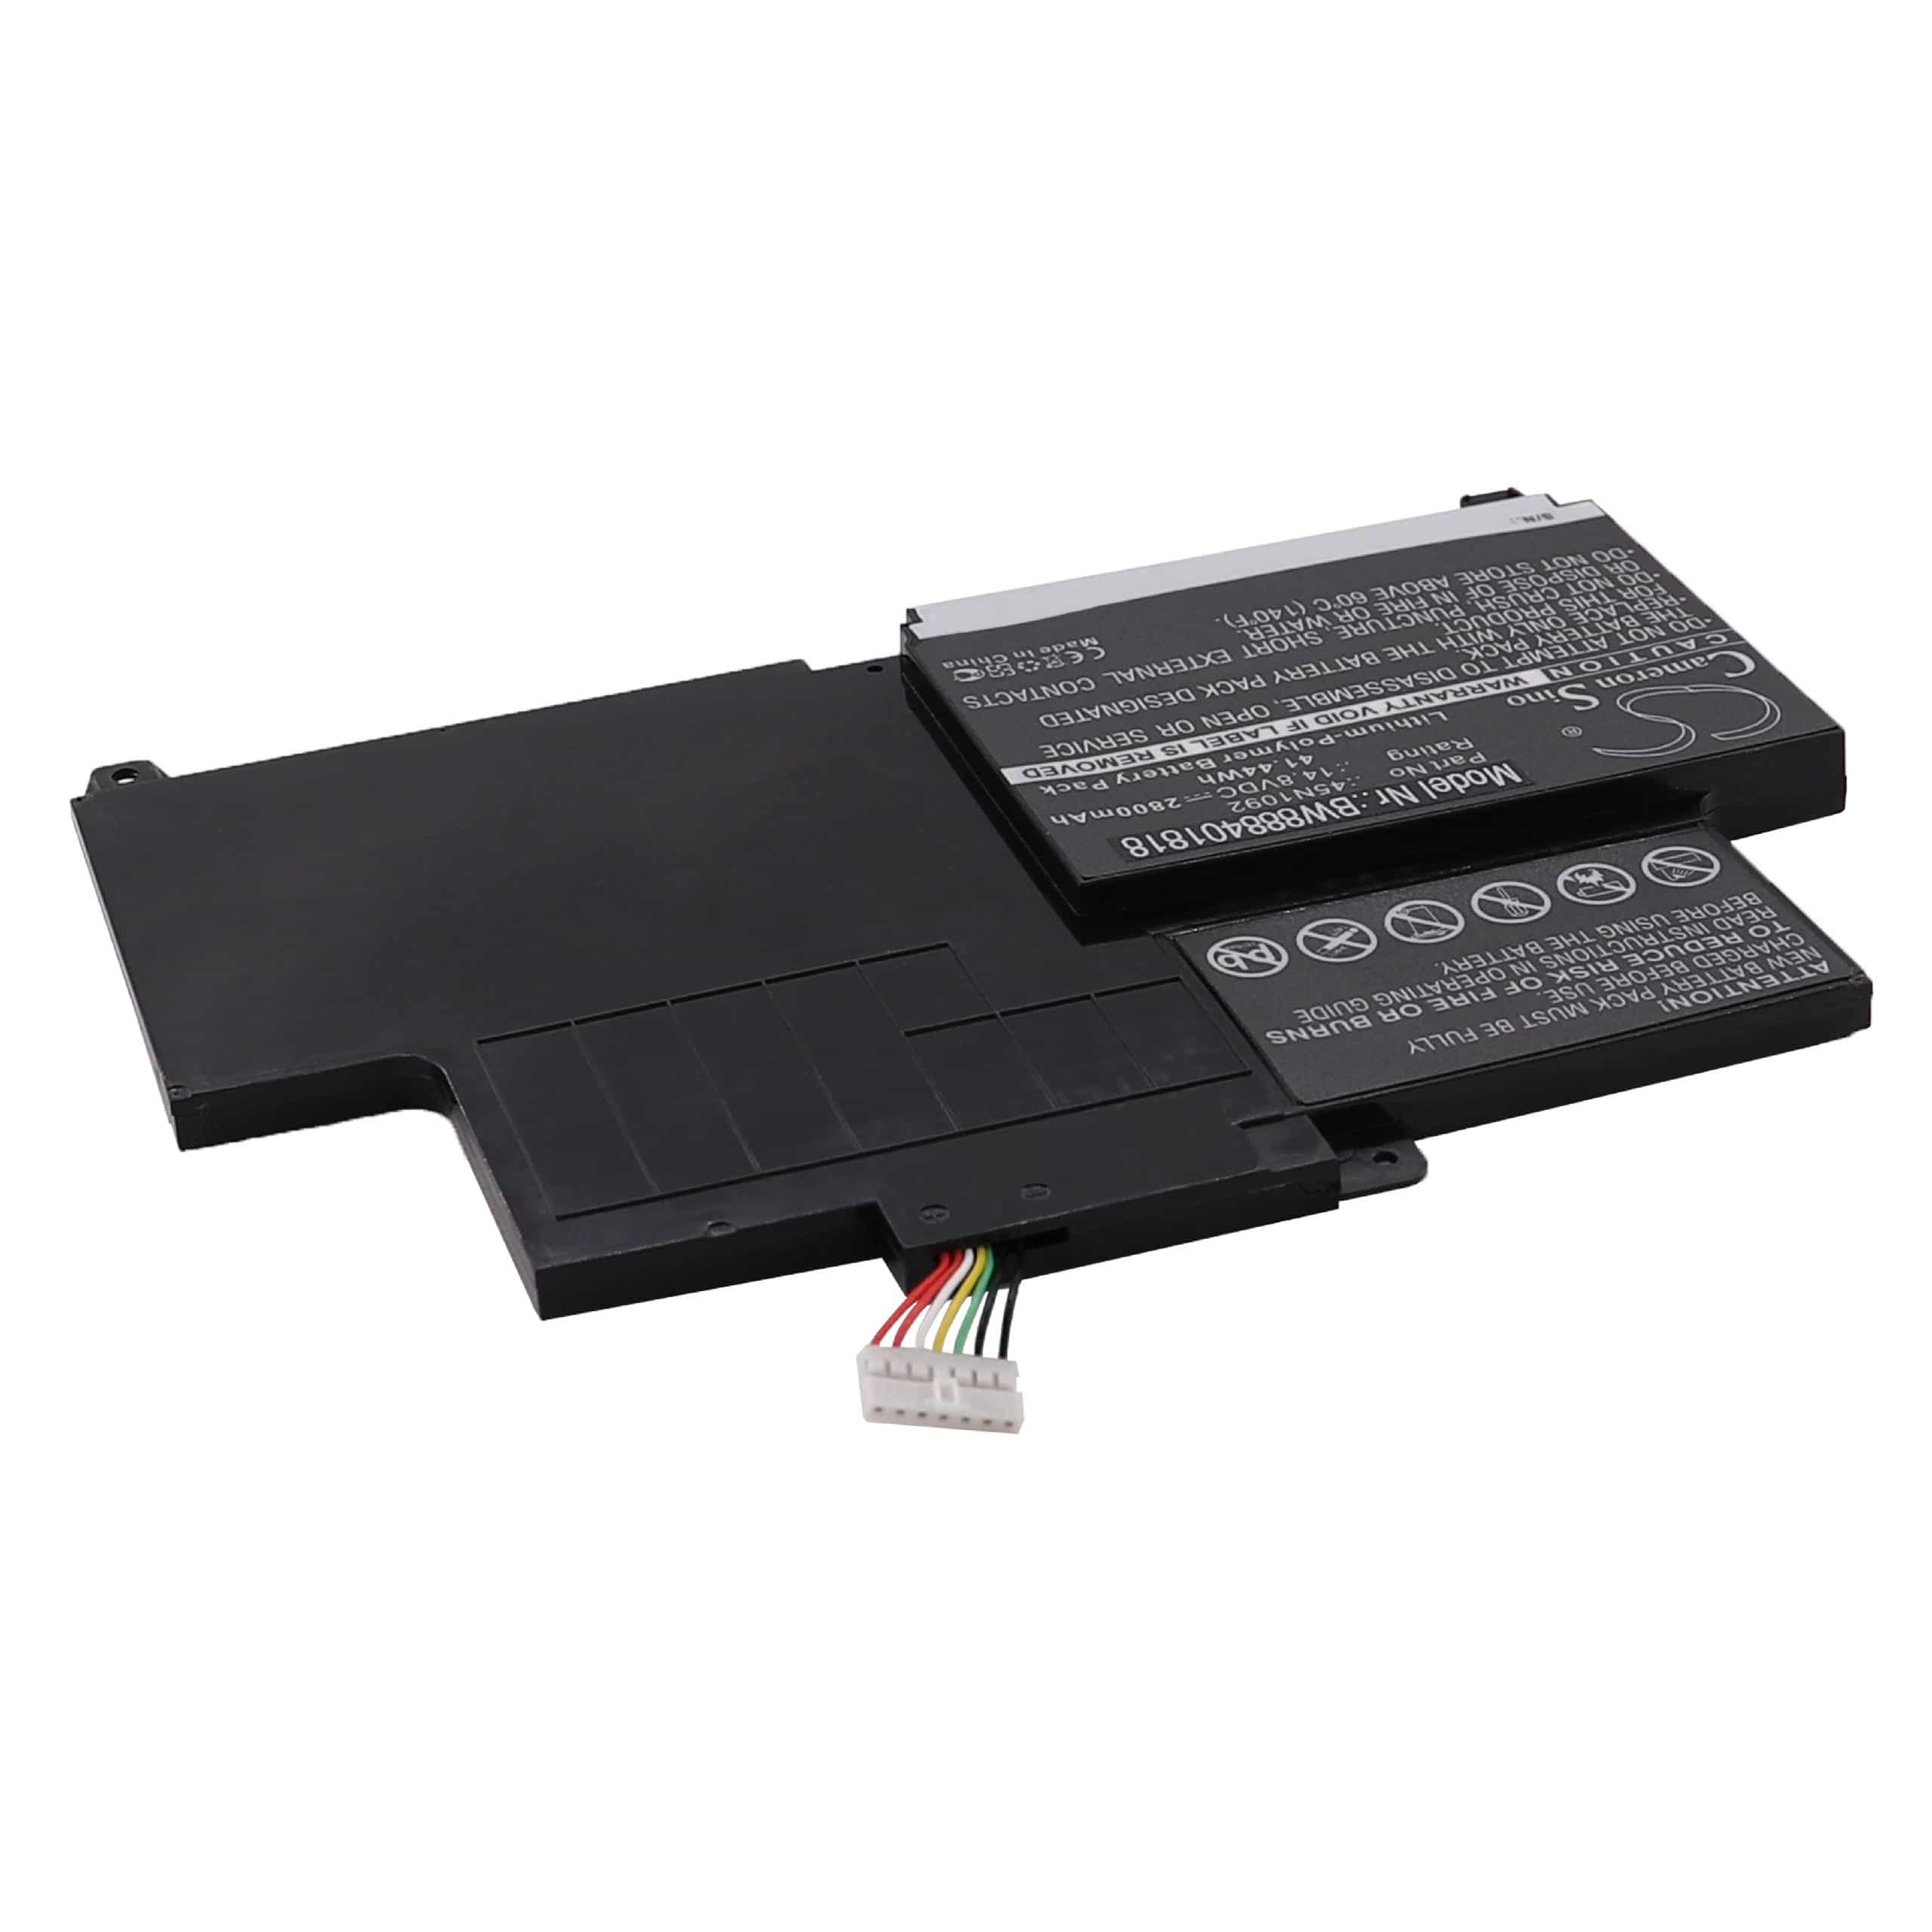 Akumulator do laptopa zamiennik Lenovo 45N1095, 45N1094, 45N1093, 45N1092 - 2800 mAh 14,8 V LiPo